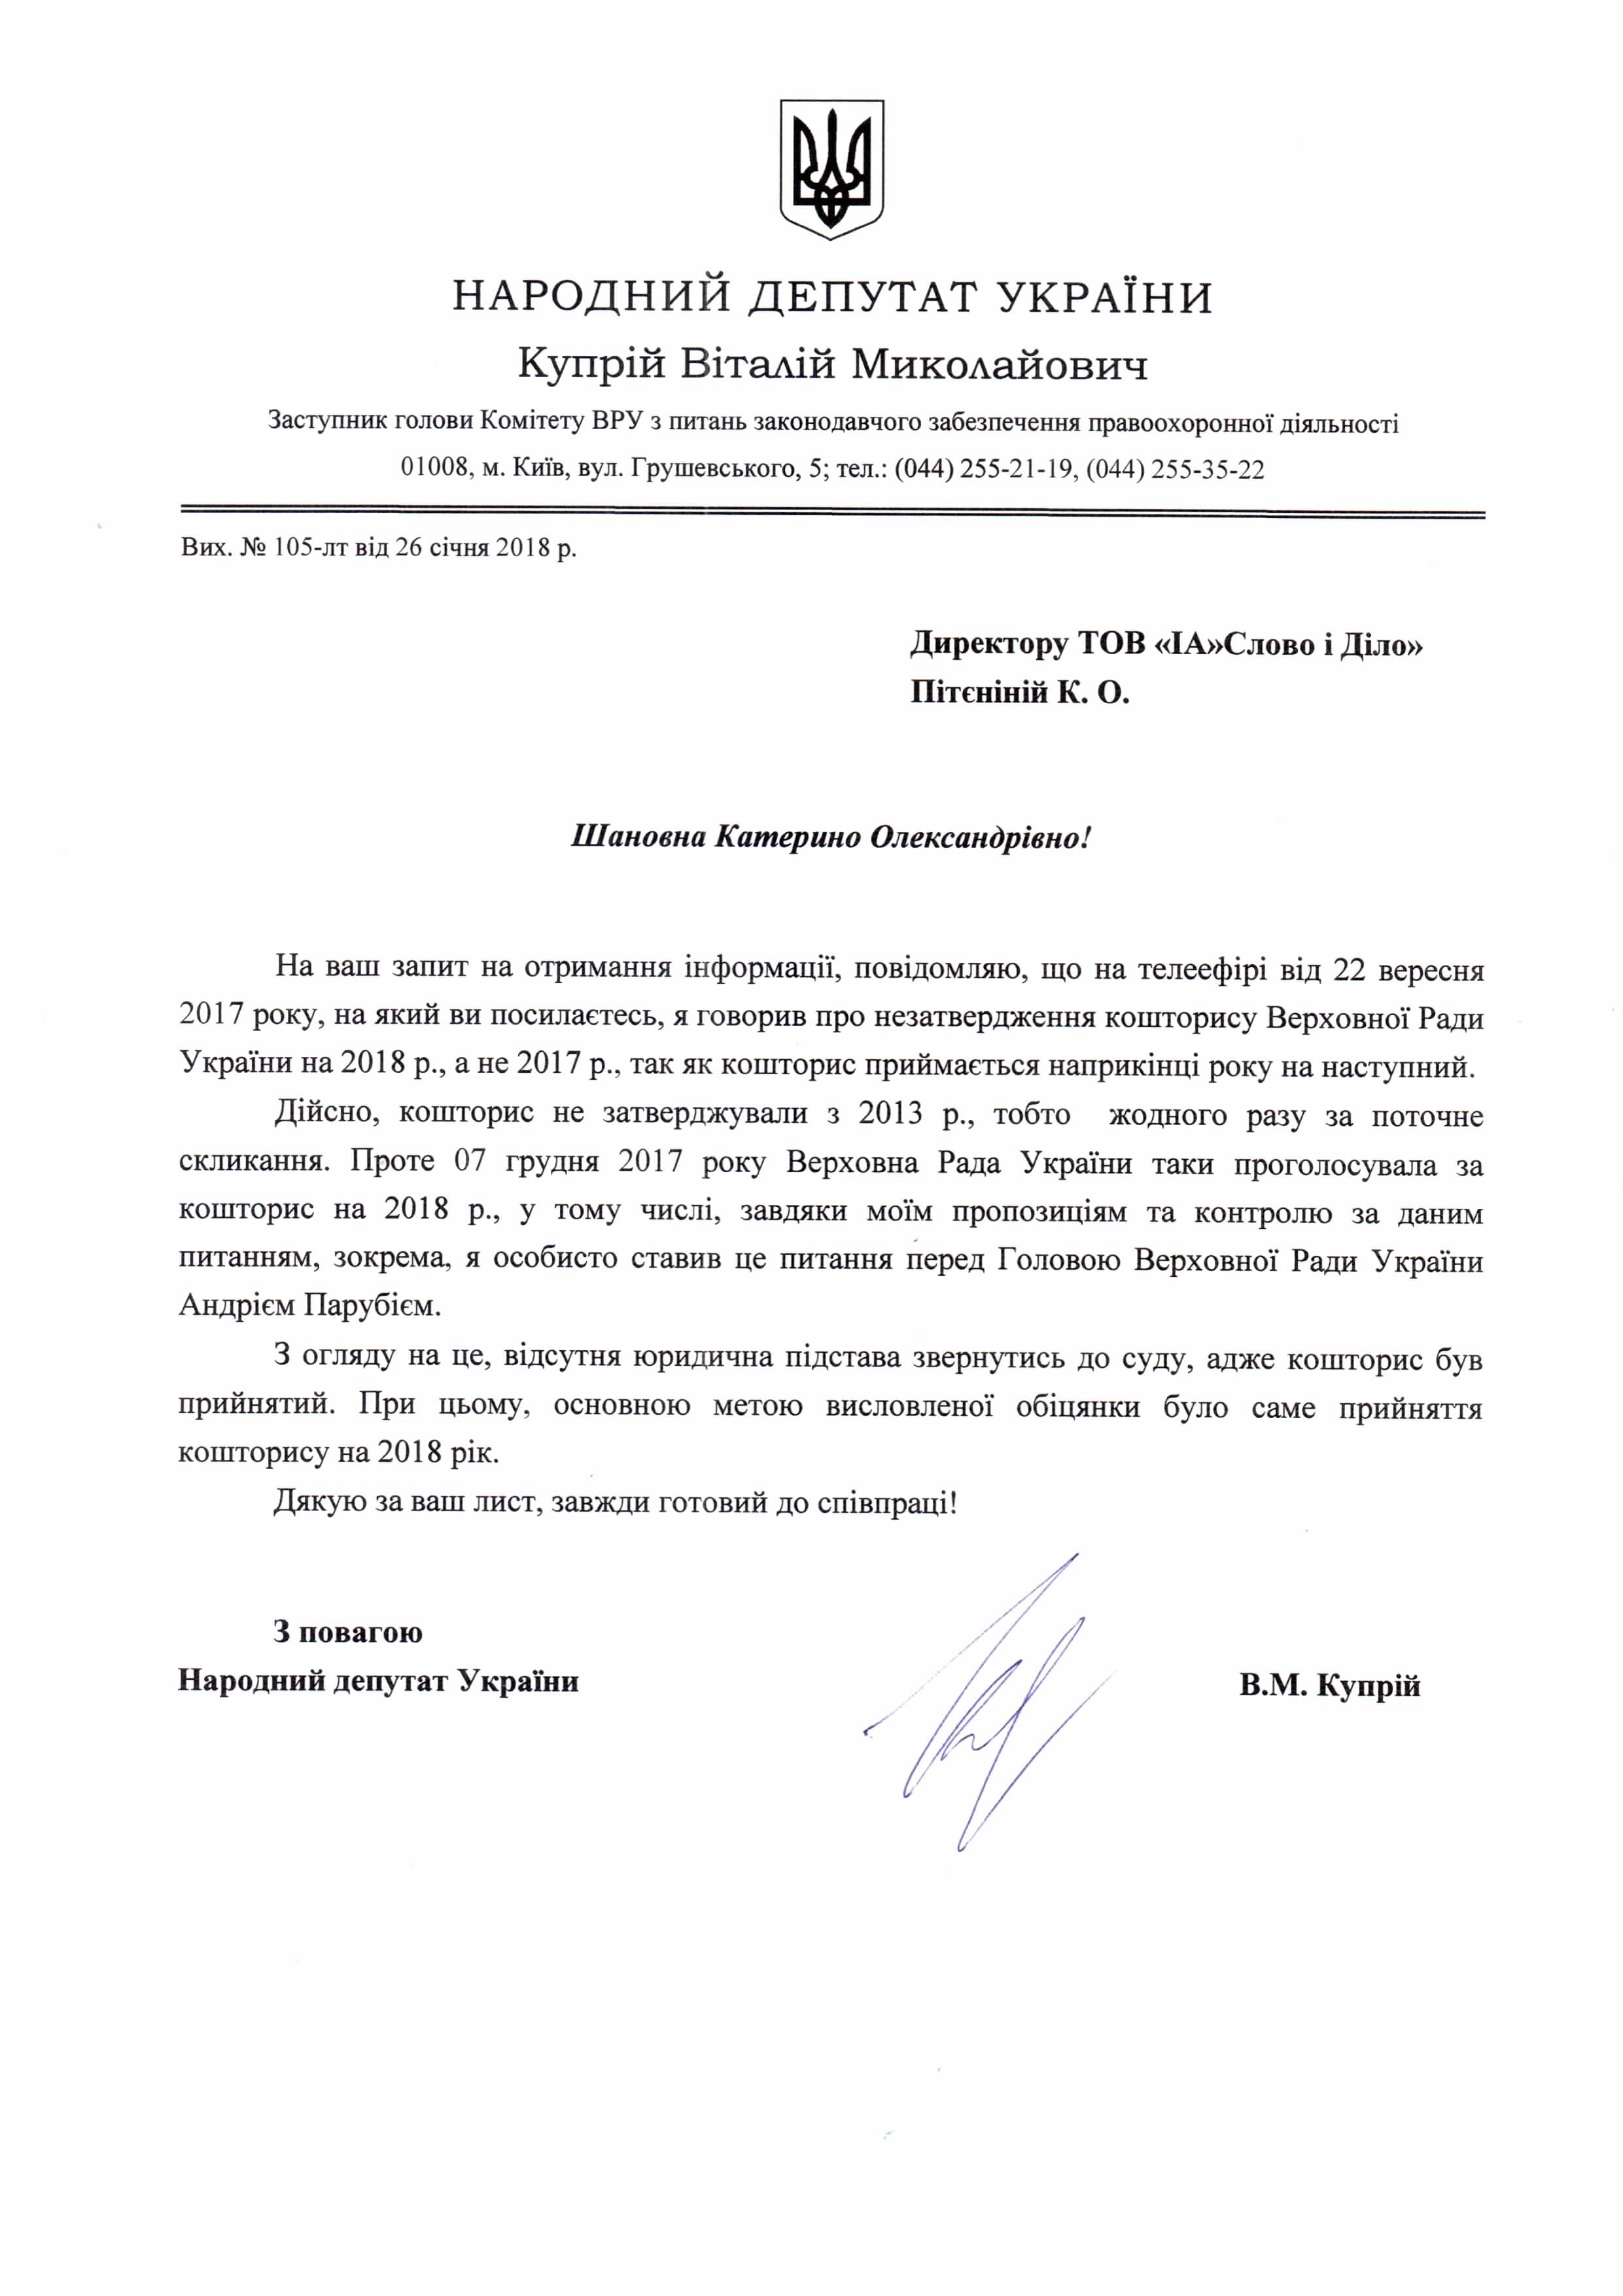 Лист від народного депутат Віталія Купрія